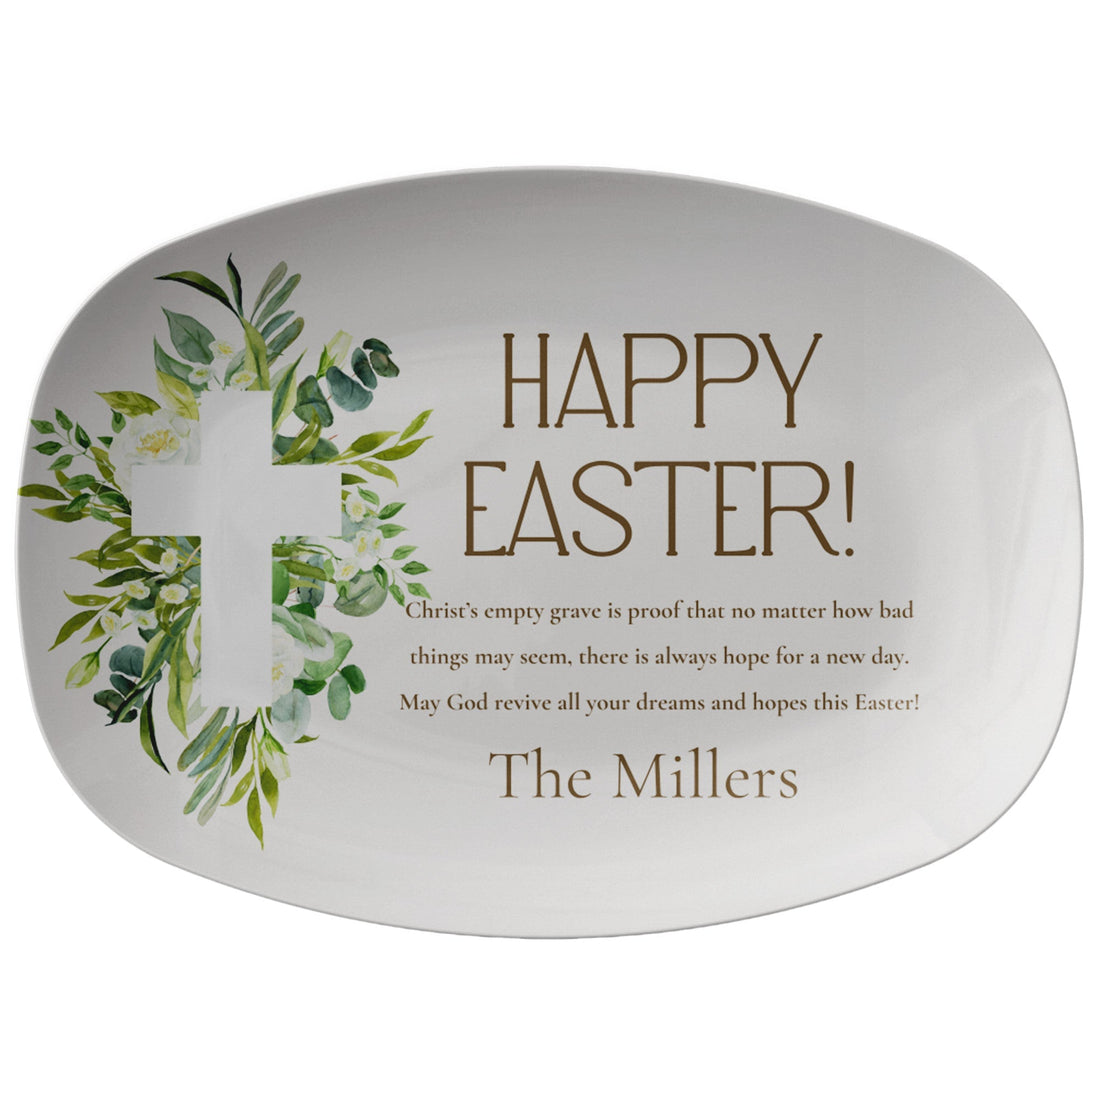 Kate McEnroe New York Easter Prayer Platter Personalized, Faithful Blessings, Family Name Custom Cross and Floral Easter Serving TrayServing PlattersP22 - CHR - EAS - 6